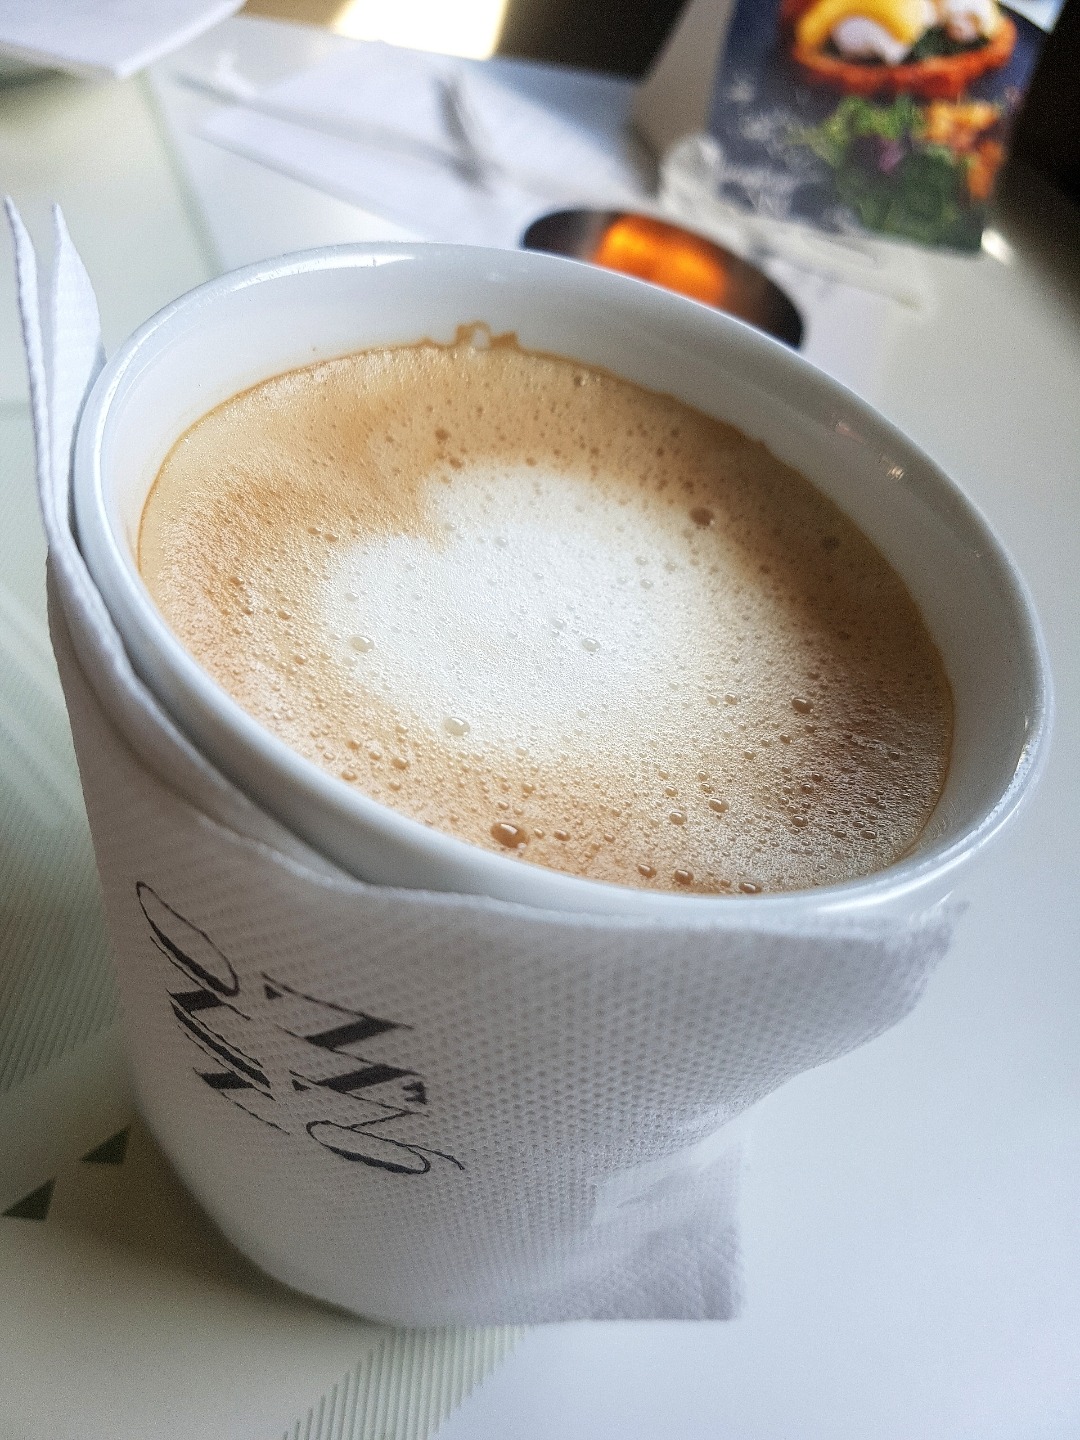 Caffe latte @ Nino  - Bahrain